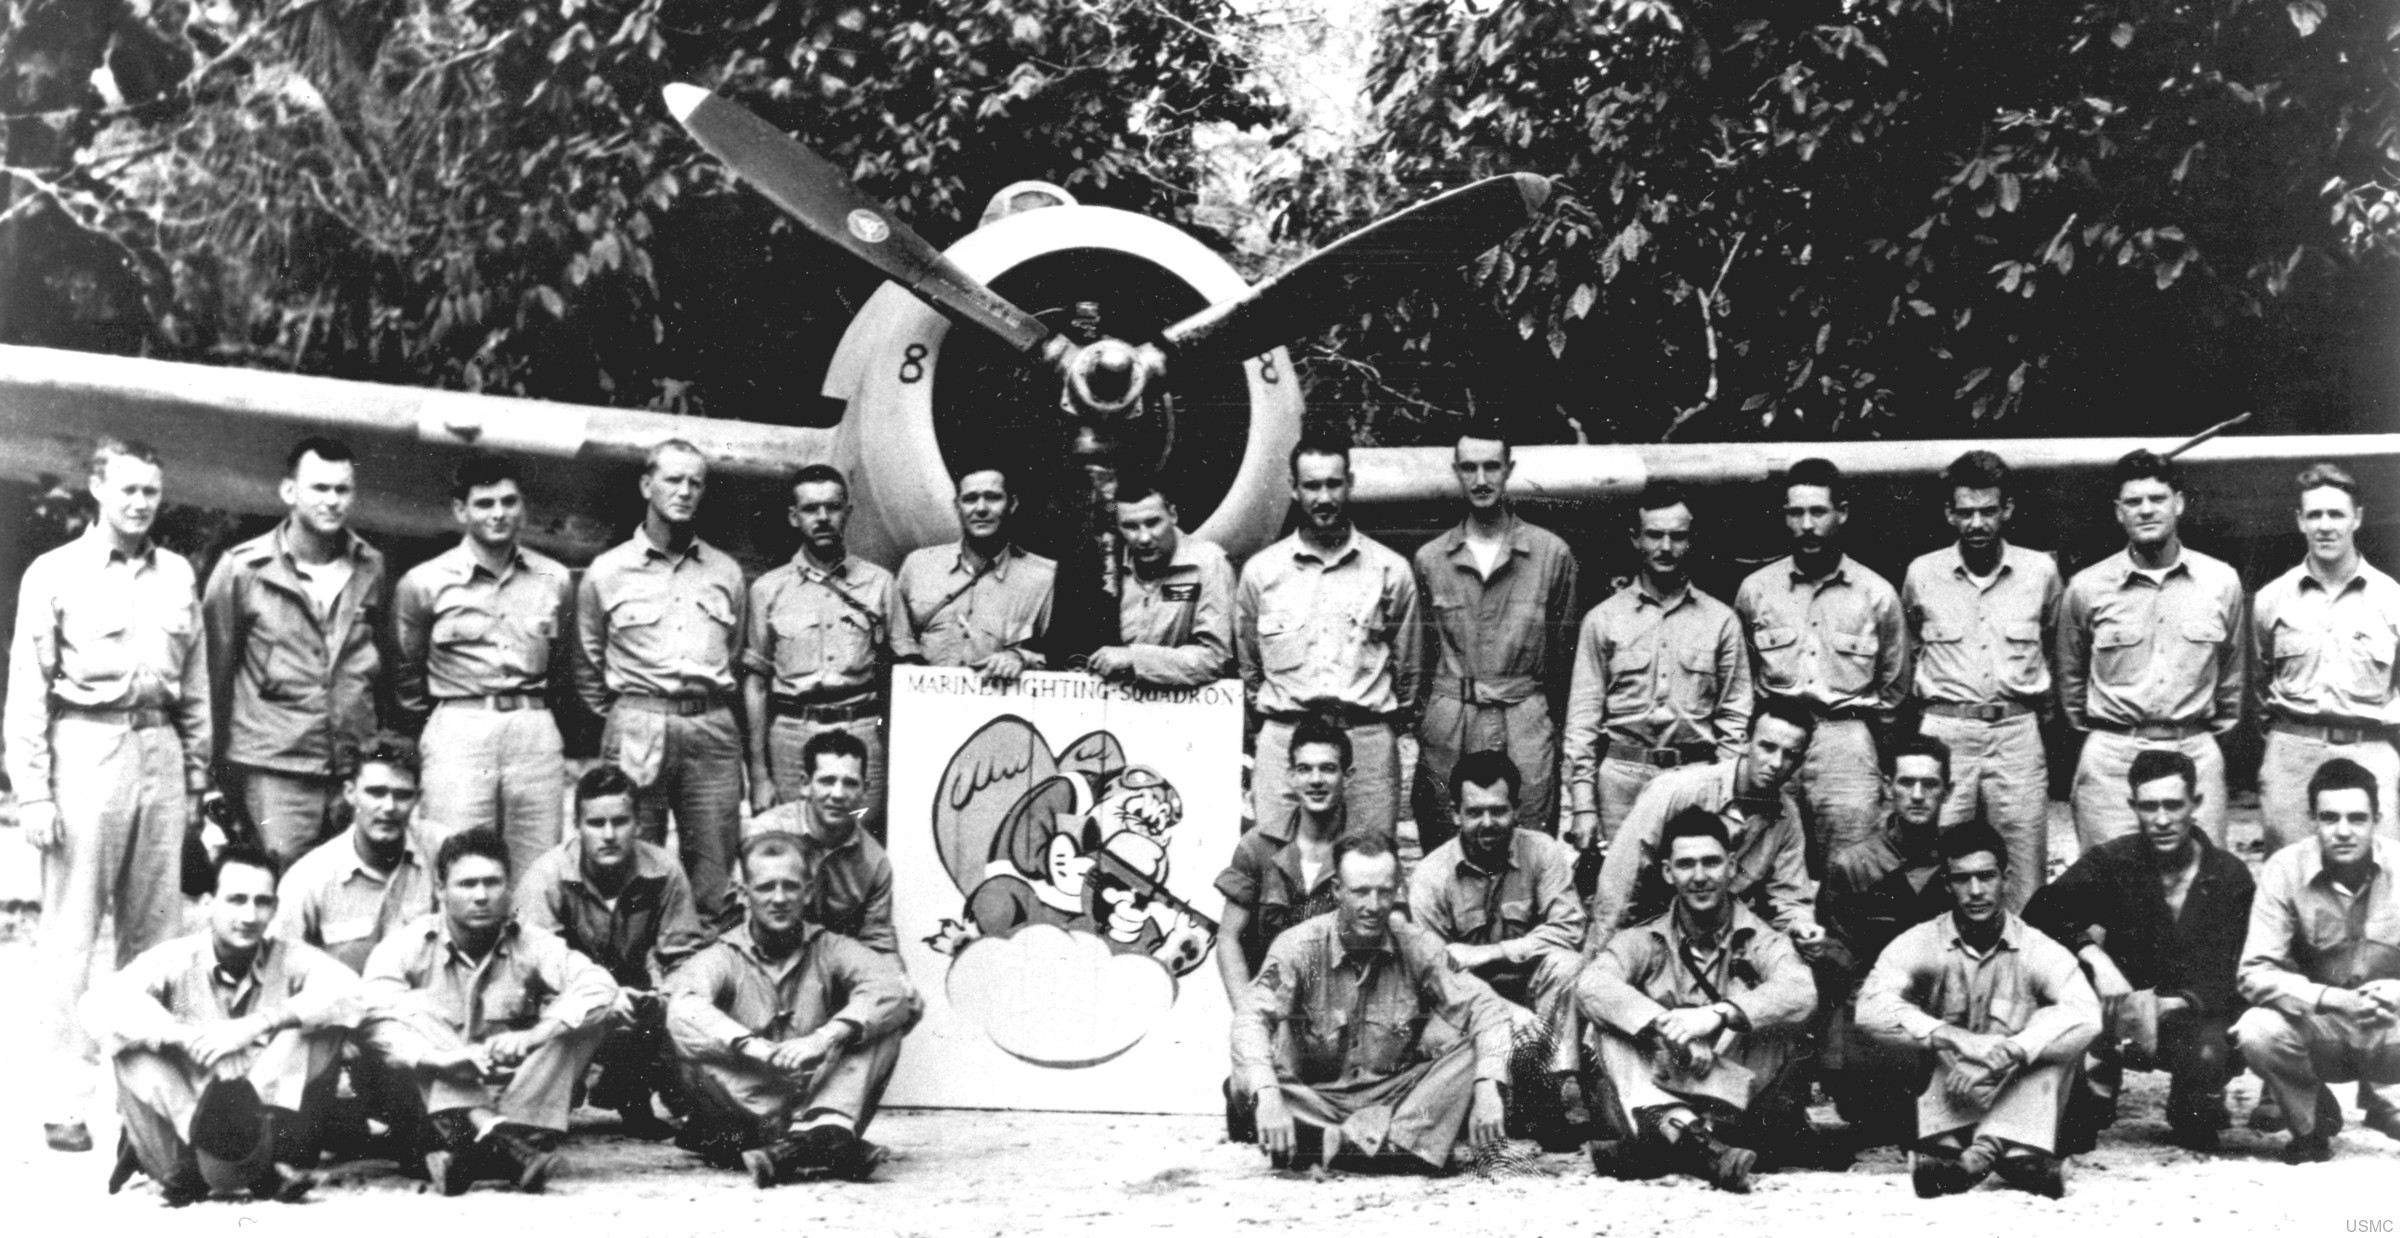 vmf-212 marine fighter squadron usmc henderson field guadalcanal 1942